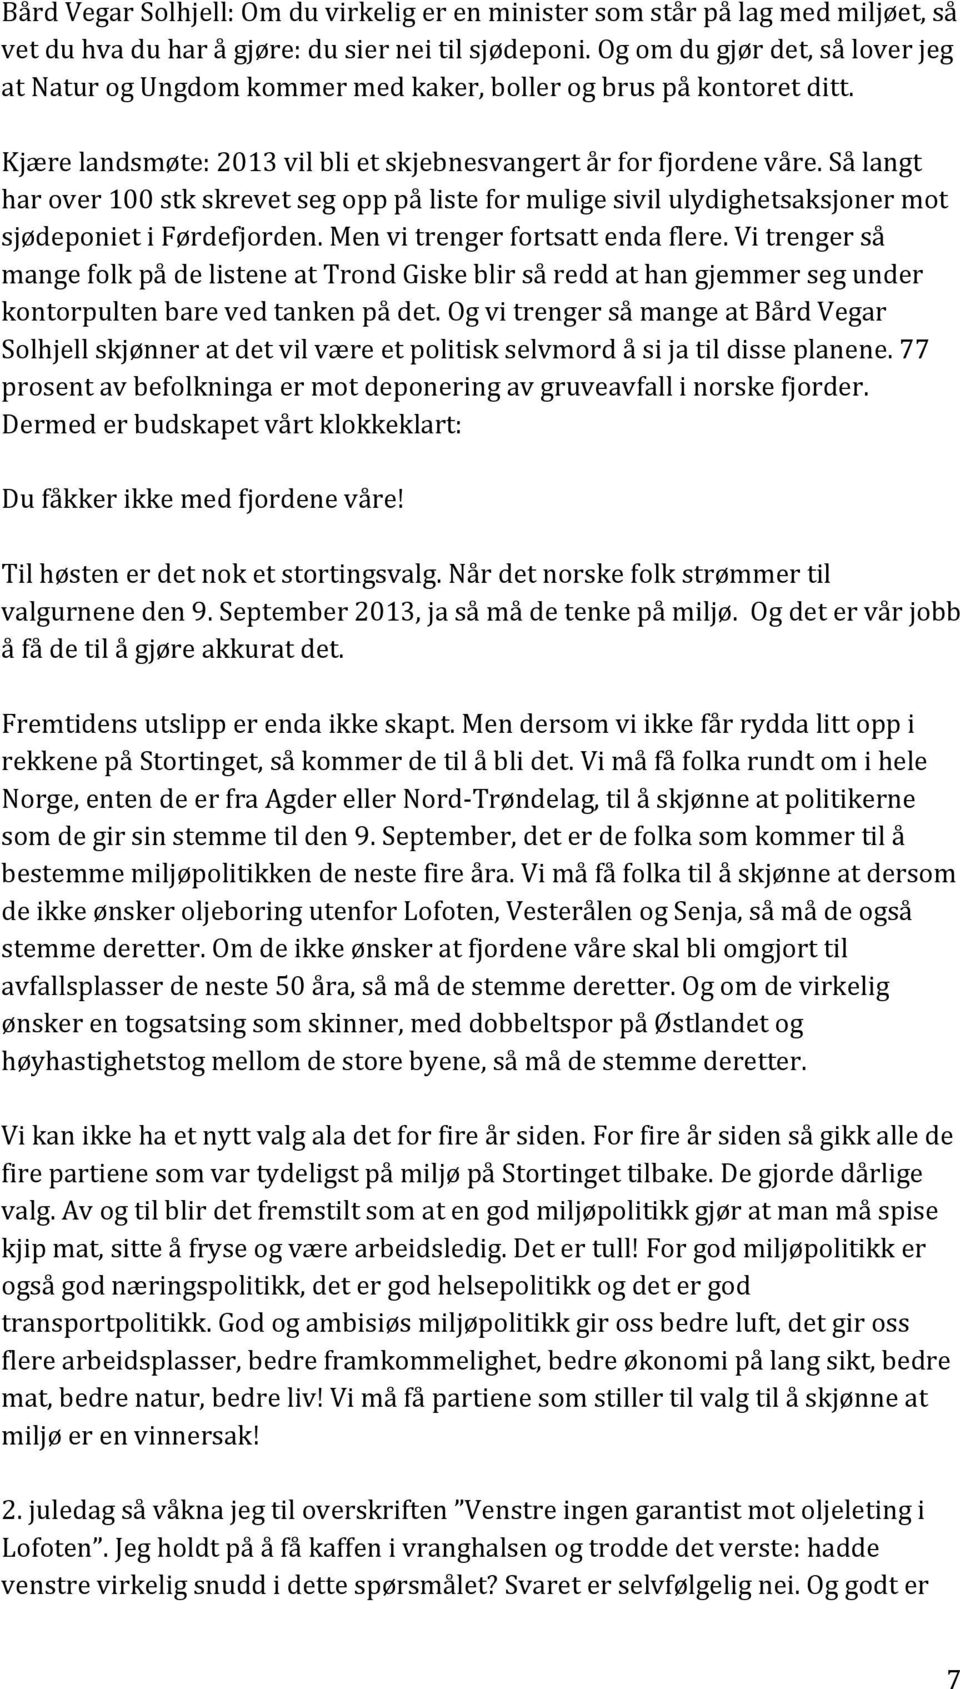 Så langt har over 100 stk skrevet seg opp på liste for mulige sivil ulydighetsaksjoner mot sjødeponiet i Førdefjorden. Men vi trenger fortsatt enda flere.